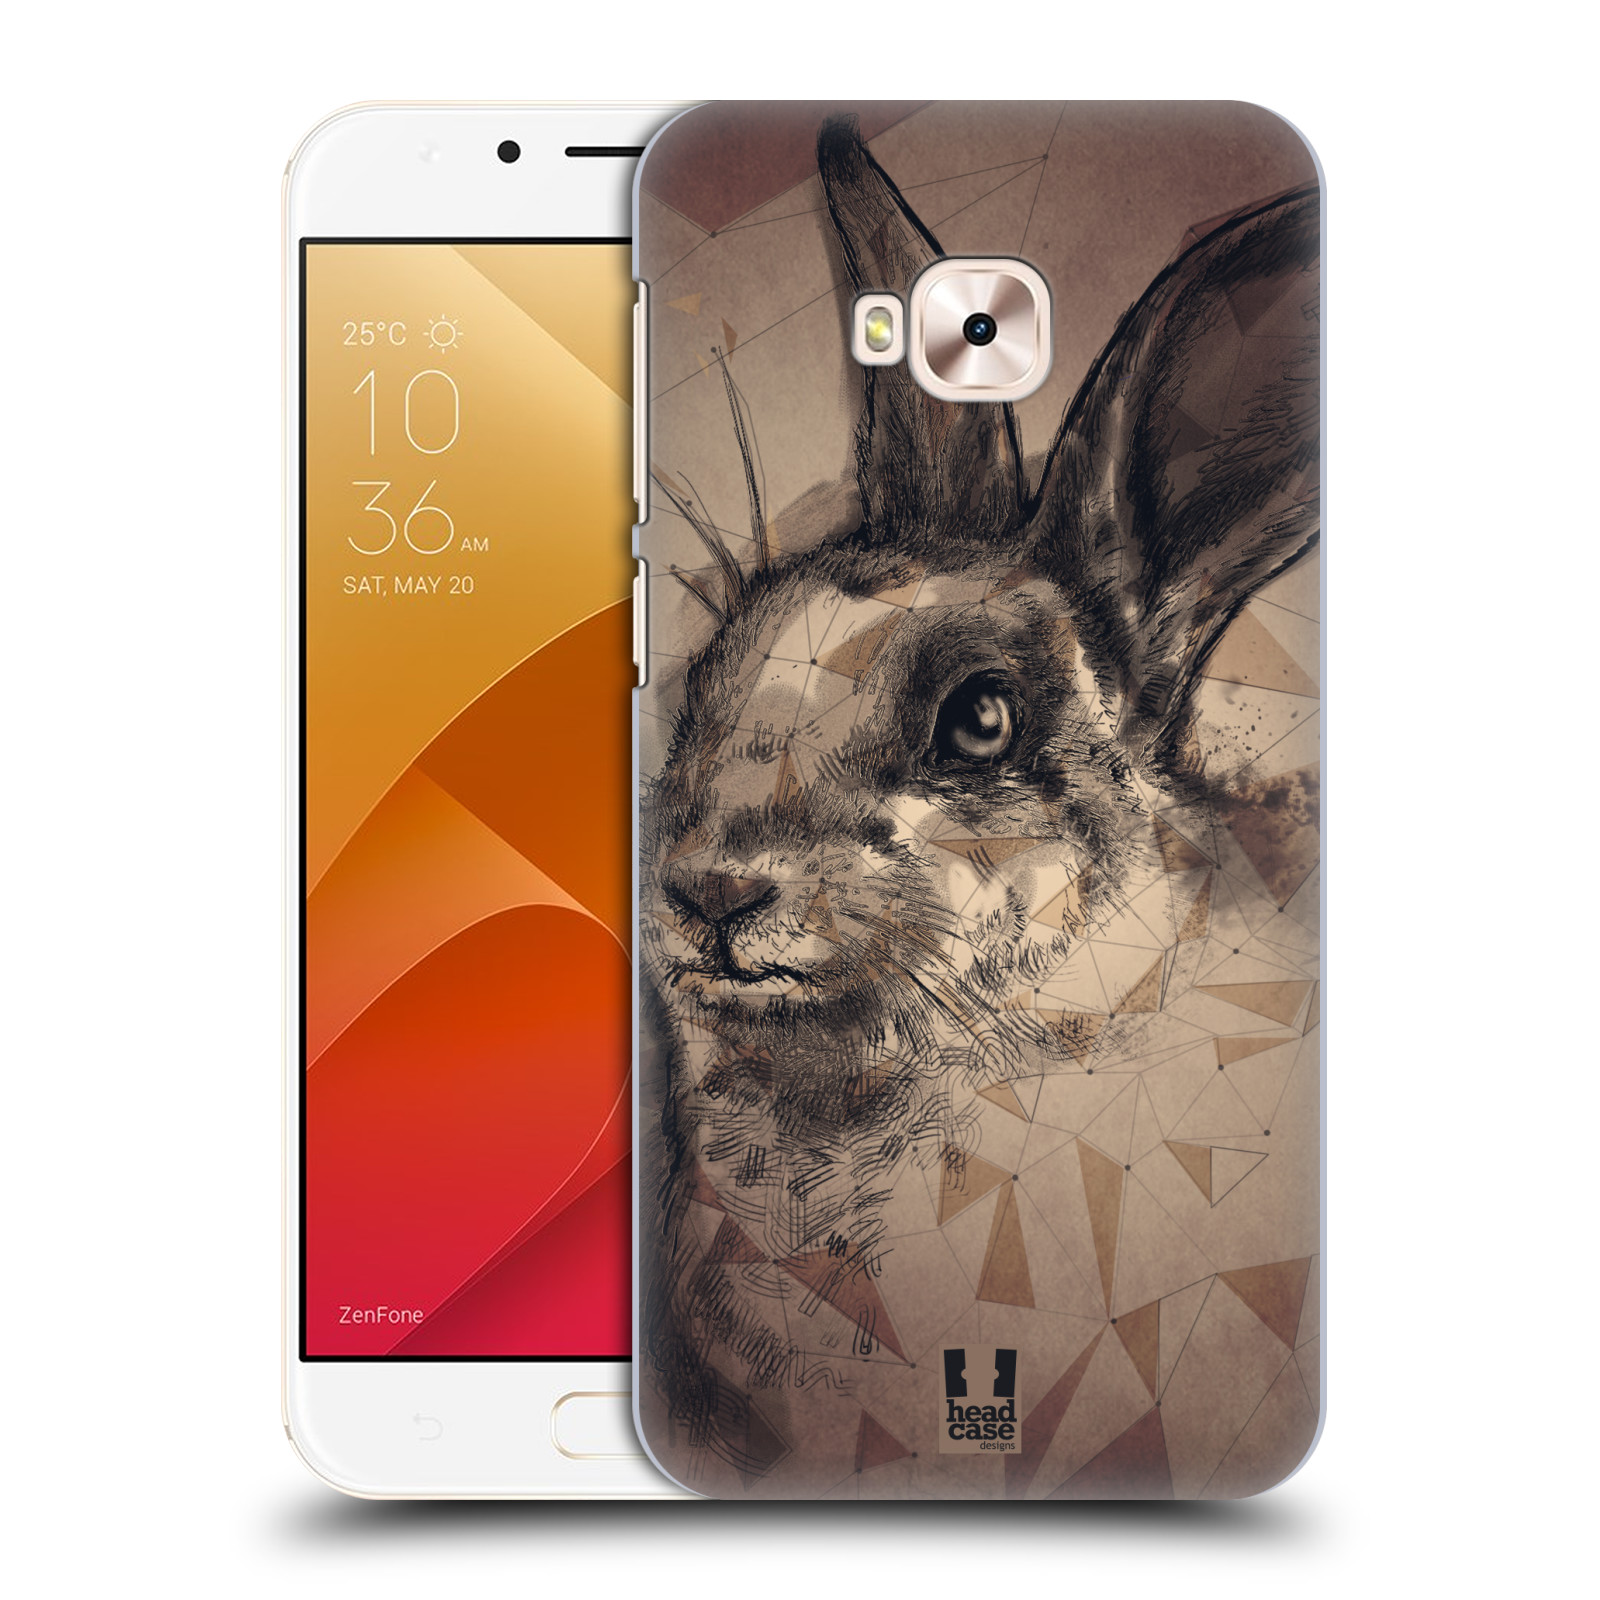 HEAD CASE plastový obal na mobil Asus Zenfone 4 Selfie Pro ZD552KL vzor Skica zvíře kreslené zajíc